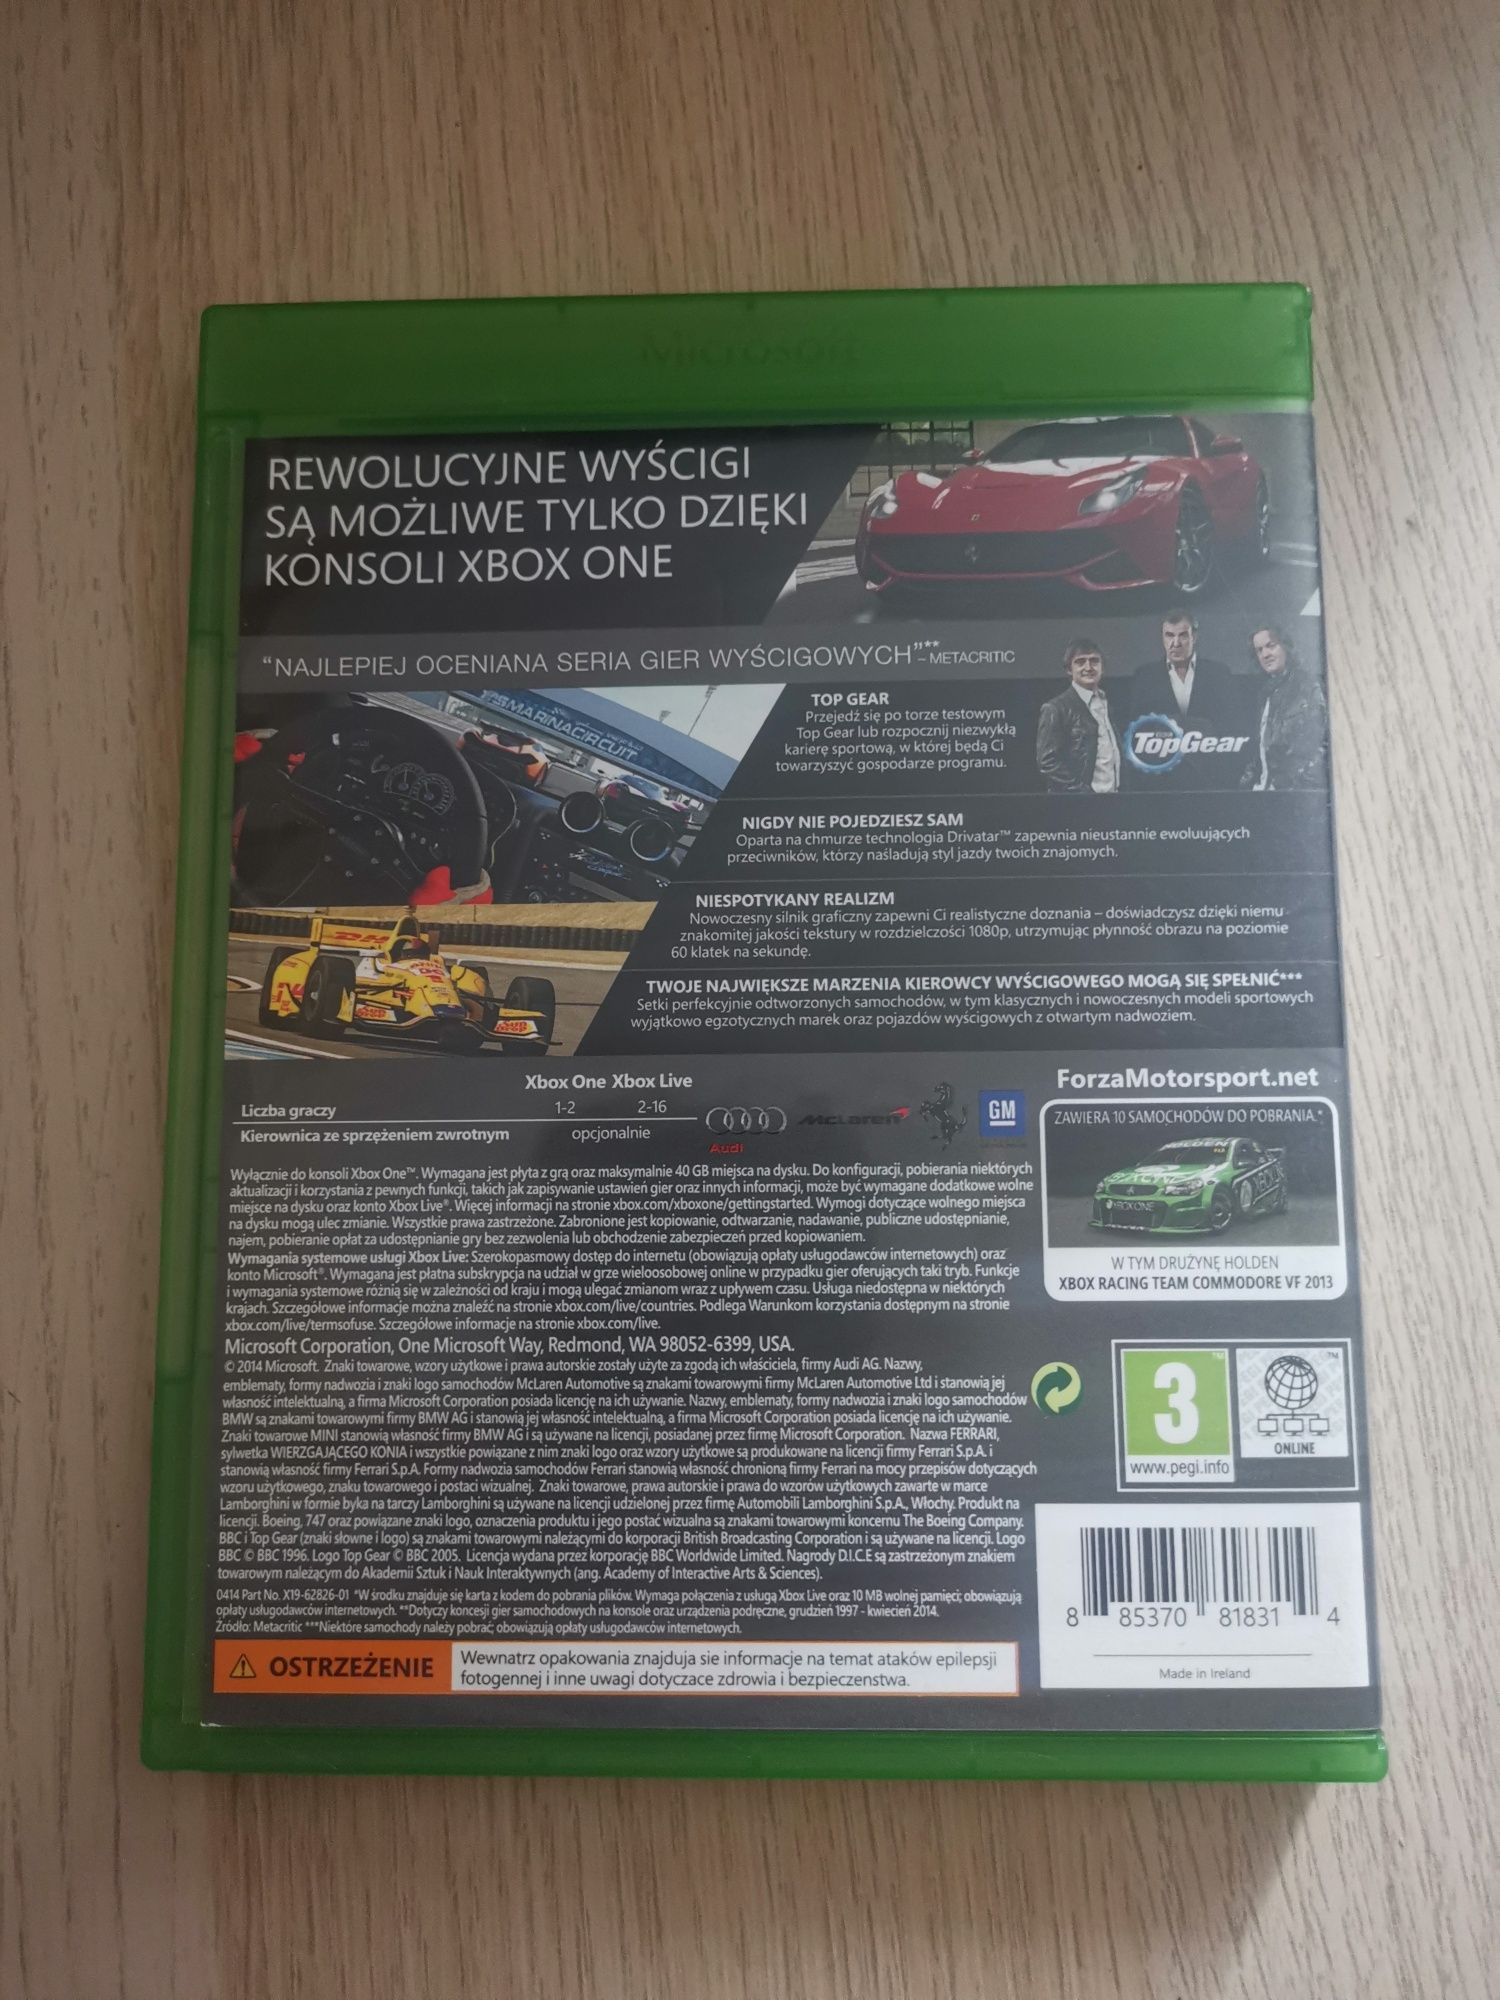 Gra wyścigową roku Forza Motosports 5 Xbox One S X Series